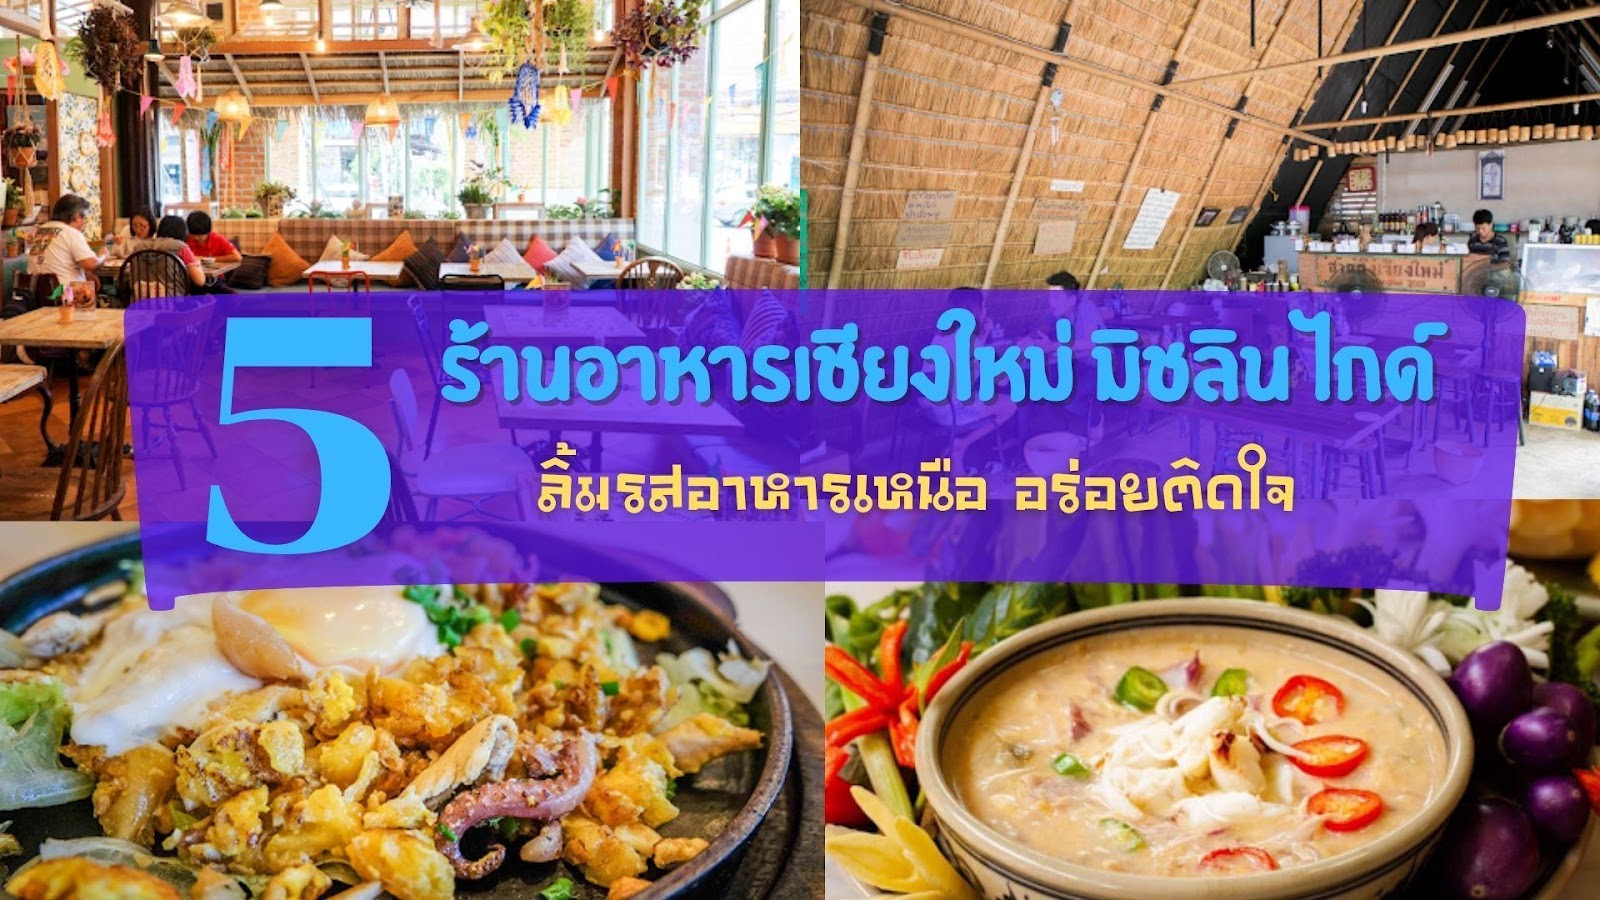 5 ร้านอาหารเชียงใหม่ มิชลิน ไกด์ อัพเดท 2021 ลิ้มรสอาหารเหนือ อร่อยติดใจ -  รีวิว จัดอันดับ ร้านอาหารในจังหวัดต่างๆทั่วประเทศไทย